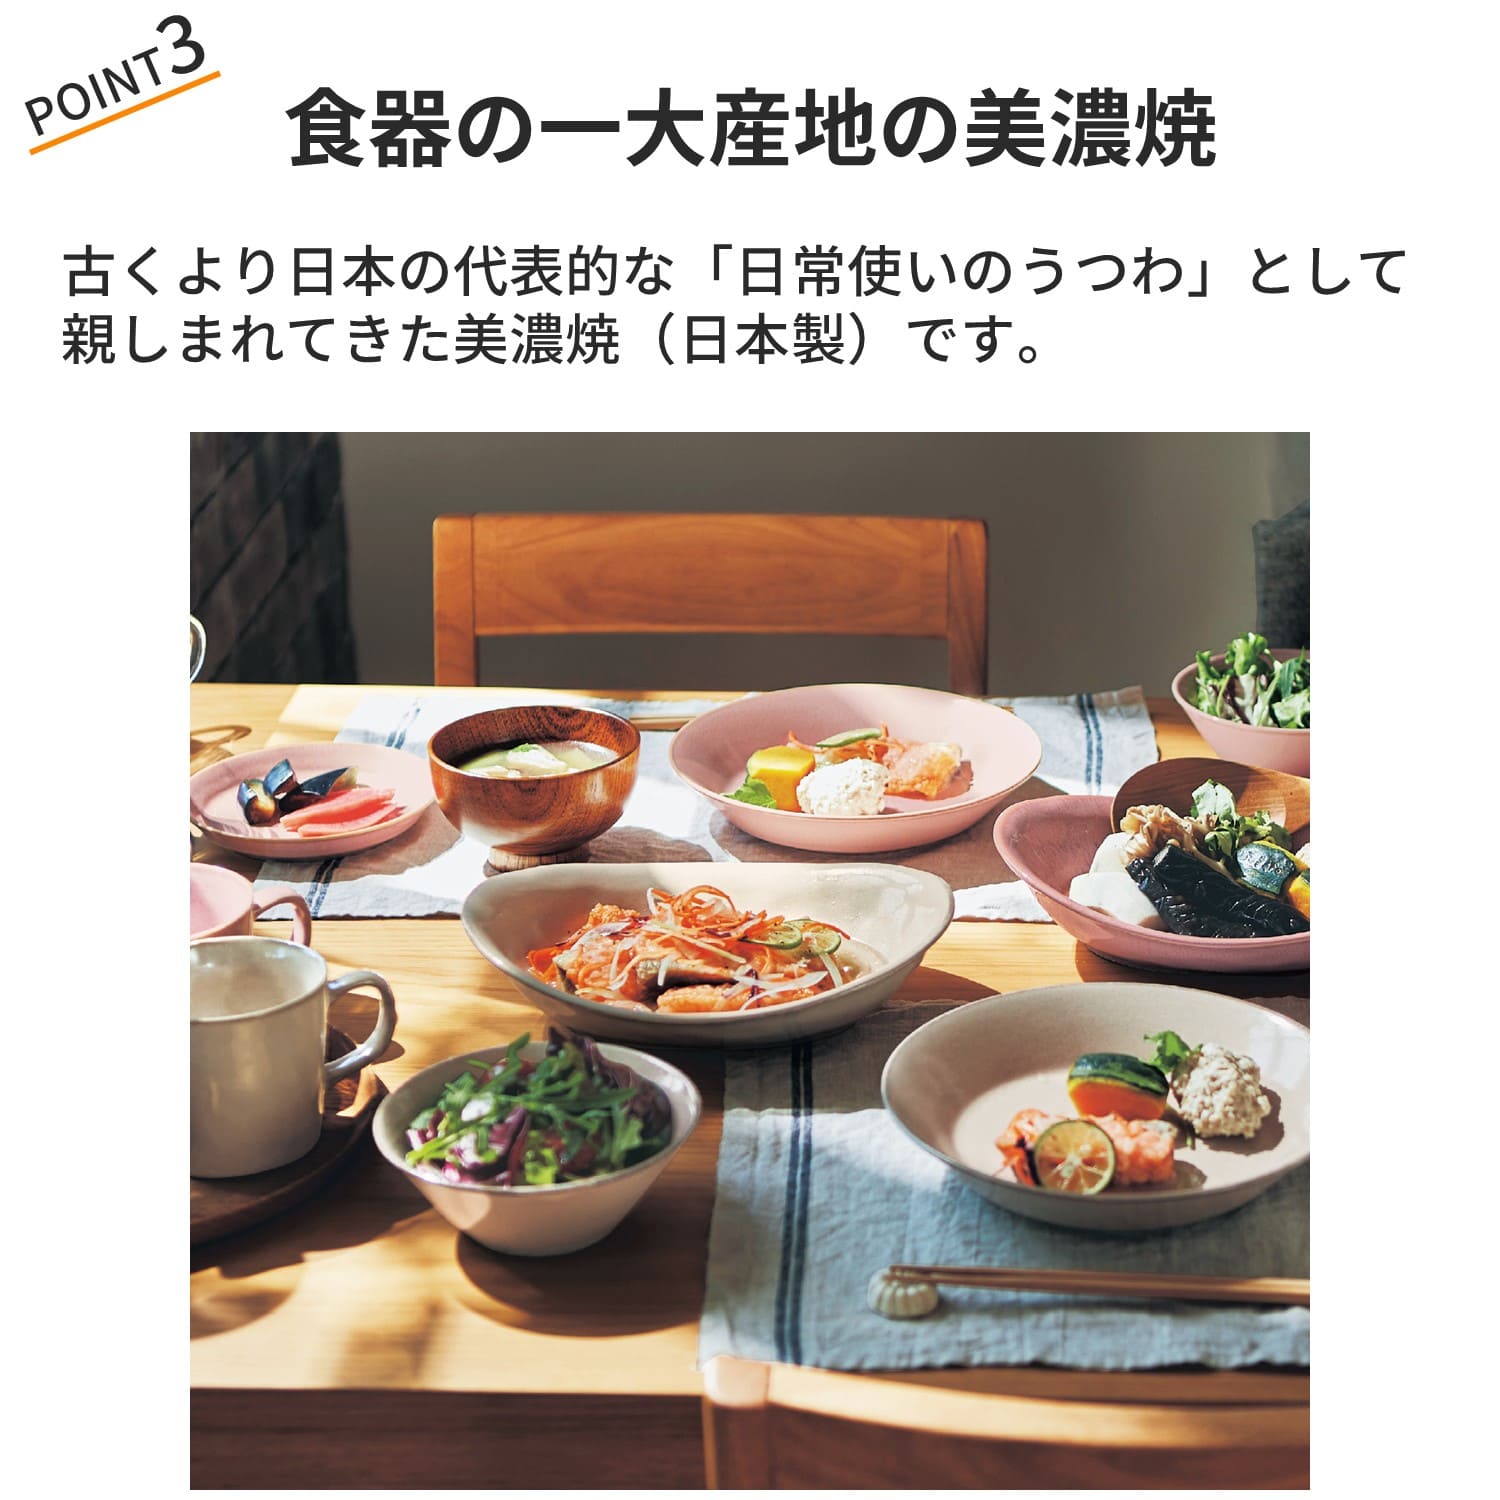 新生活用美濃焼の食器セット[日本製] u003c2人用10枚セットu003e 【お皿/平皿/カレー皿/さんま皿】 -